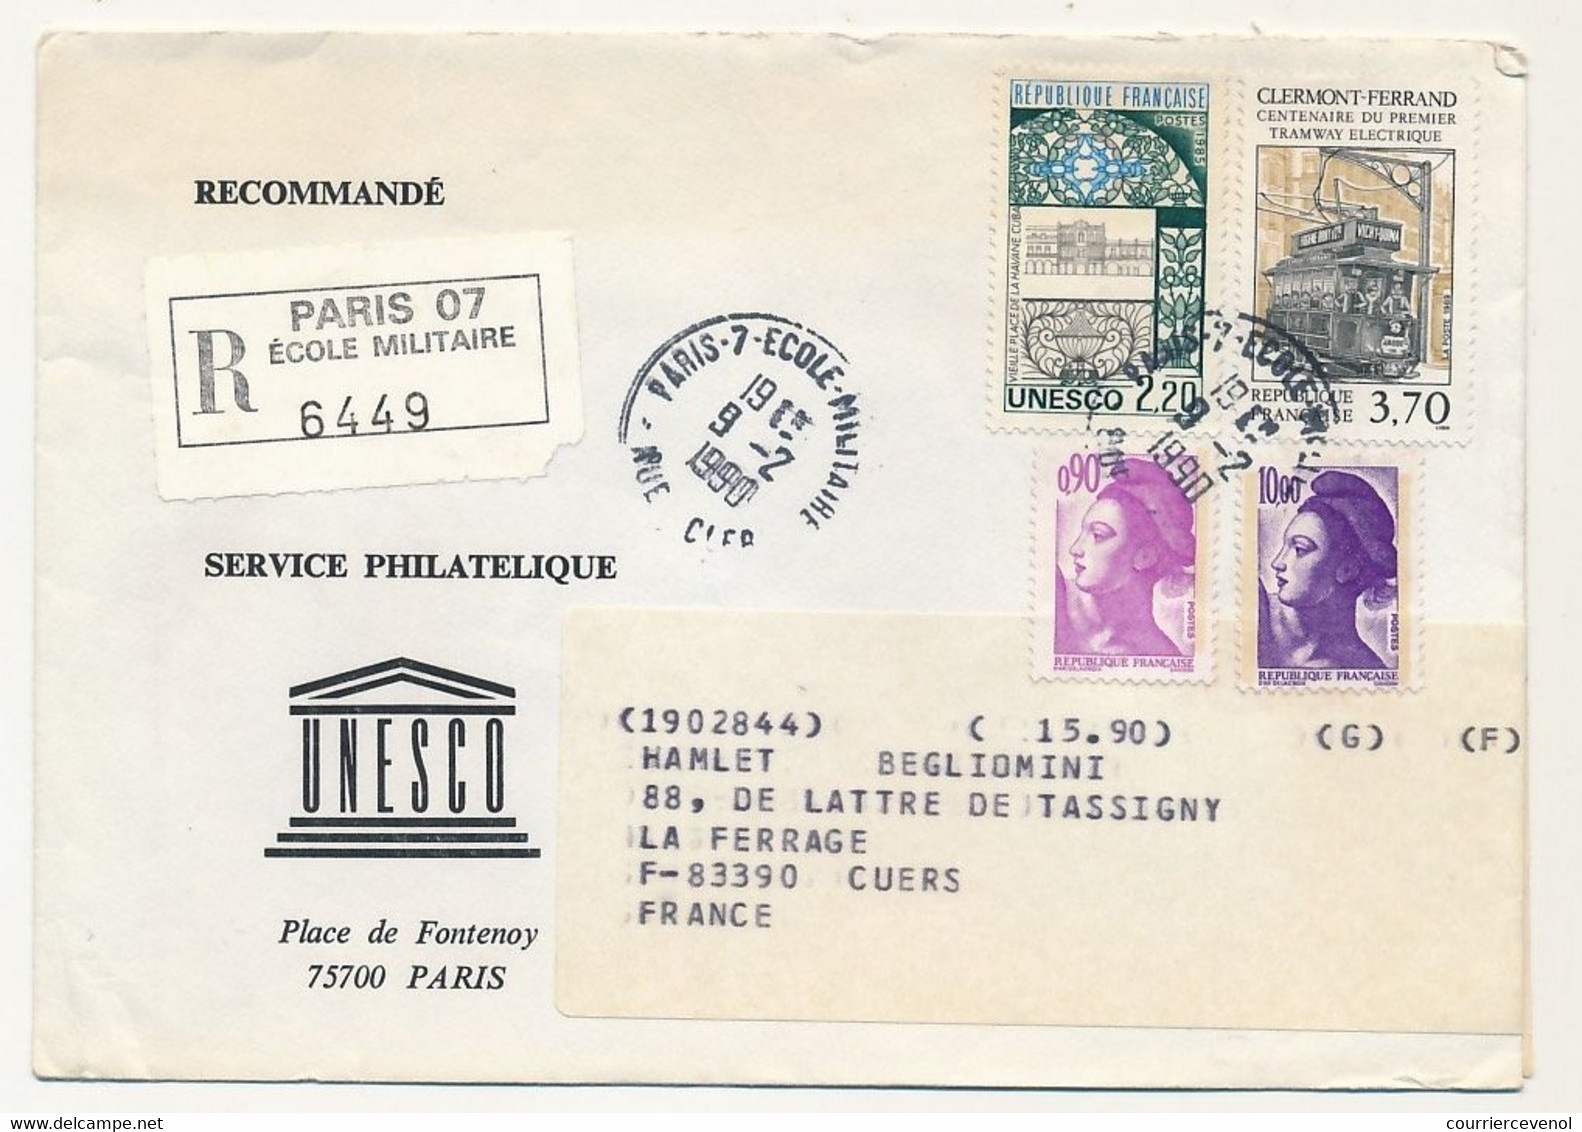 FRANCE - UNESCO - 8 Enveloppes Service Philatélique Unesco Avec Timbres De Service - Obl Paris 7 Rue Clerc - 1989/90 - Cartas & Documentos